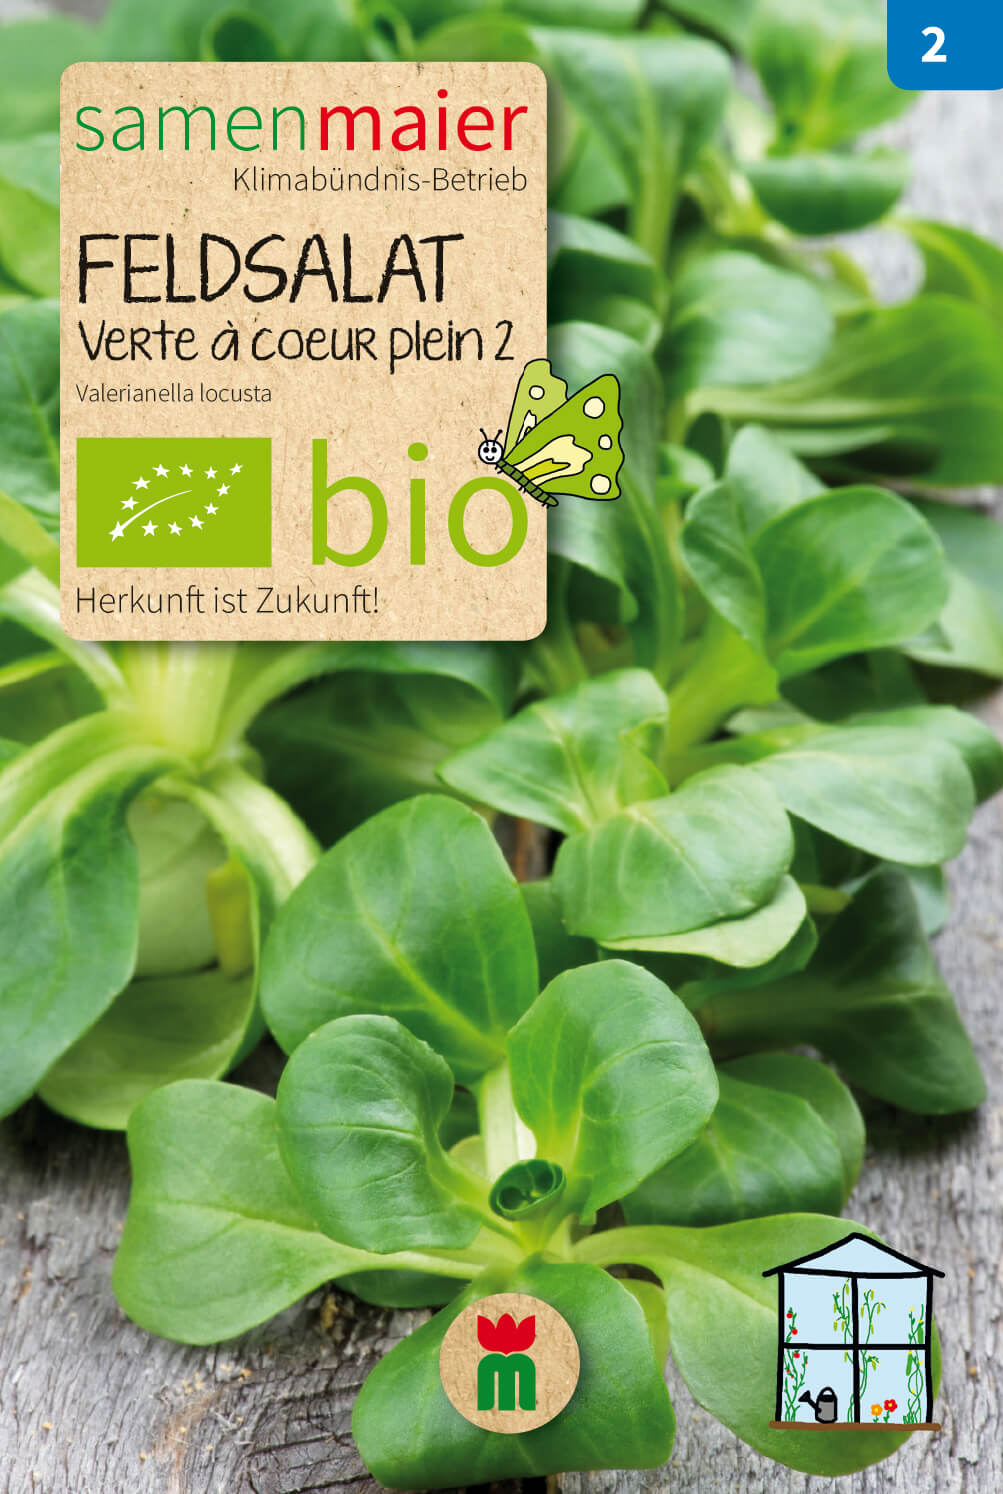 Beet-Box "Für die Herbsternte" | BIO Gemüsesamen-Sets von Samen Maier